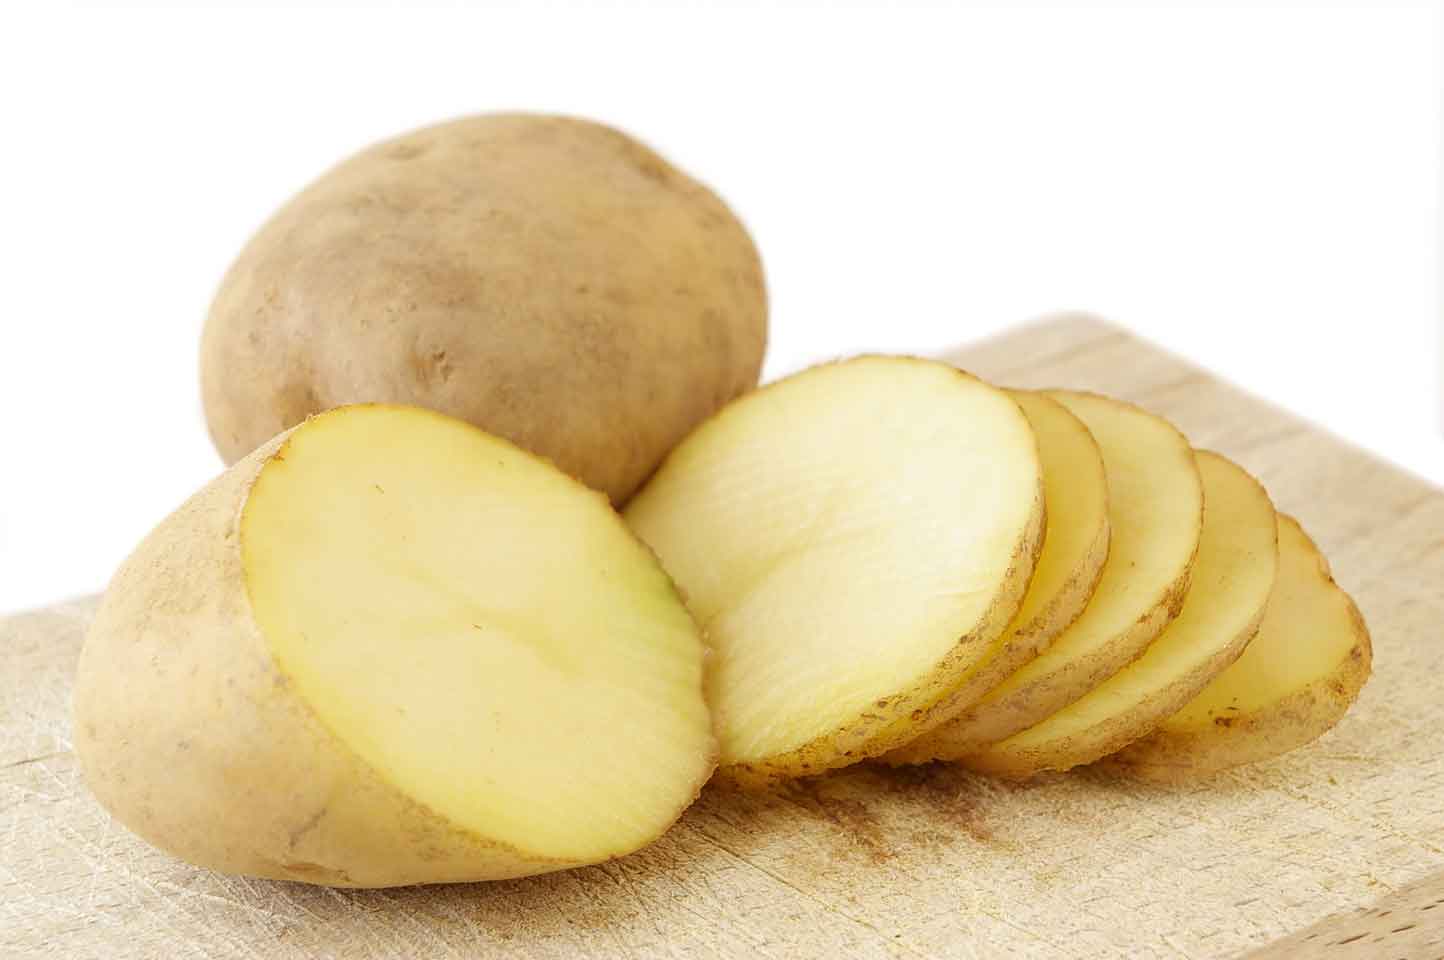 Dùng khoai tây cũng là cách trị bỏng tốt giúp ngăn ngừa hình thành mụn nước